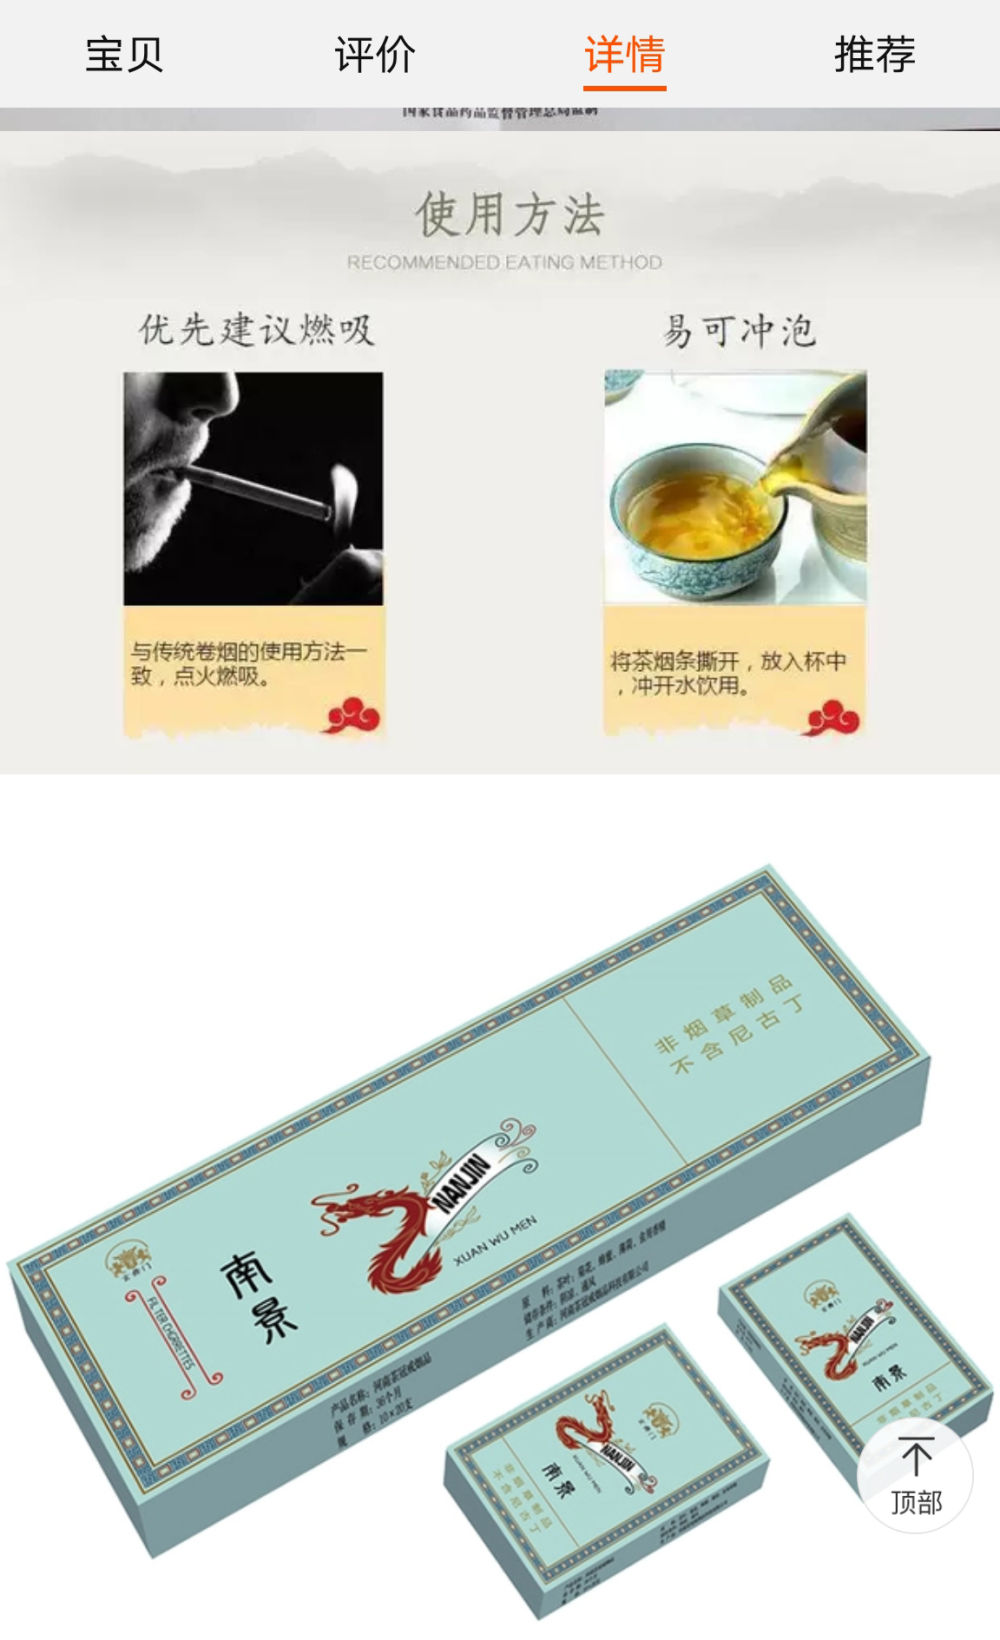 某茶烟产品在商品详情中介绍使用方法，宣称可燃吸，亦可冲泡。（网页截图）